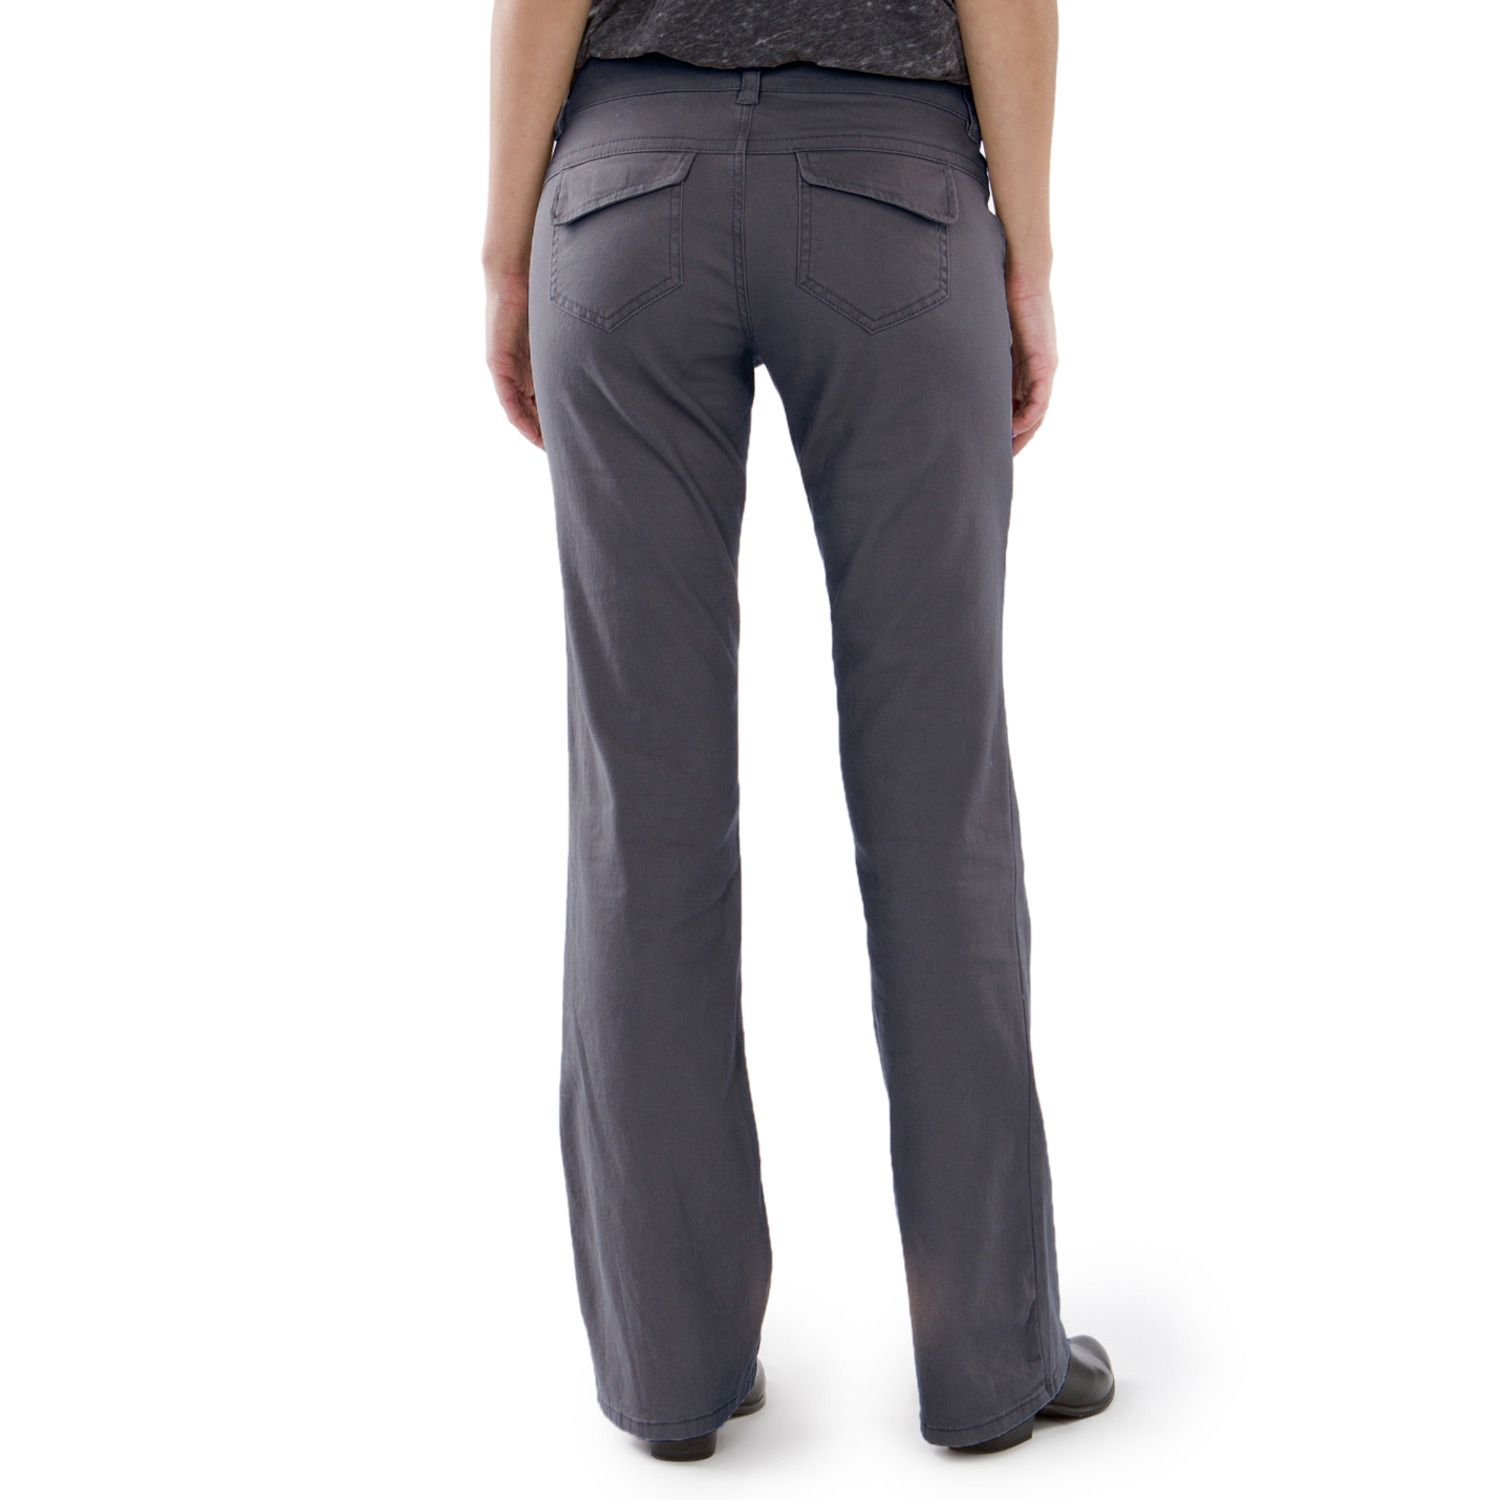 Школьная форма Unionbay для юниоров, брюки с принтом «хизер» Unionbay